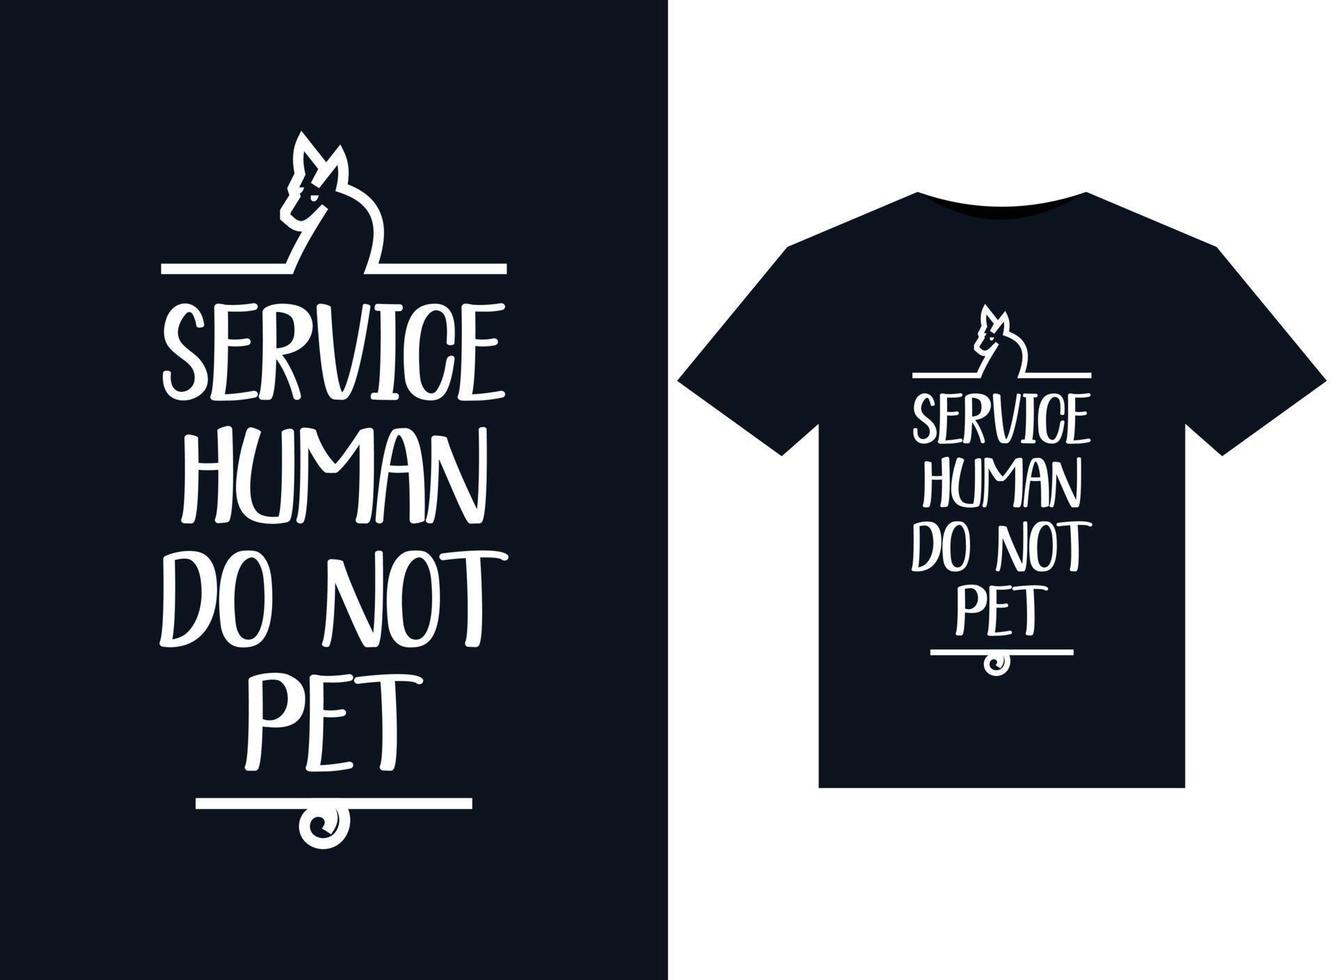 onderhoud menselijk Doen niet huisdier illustraties voor drukklare t-shirts ontwerp vector